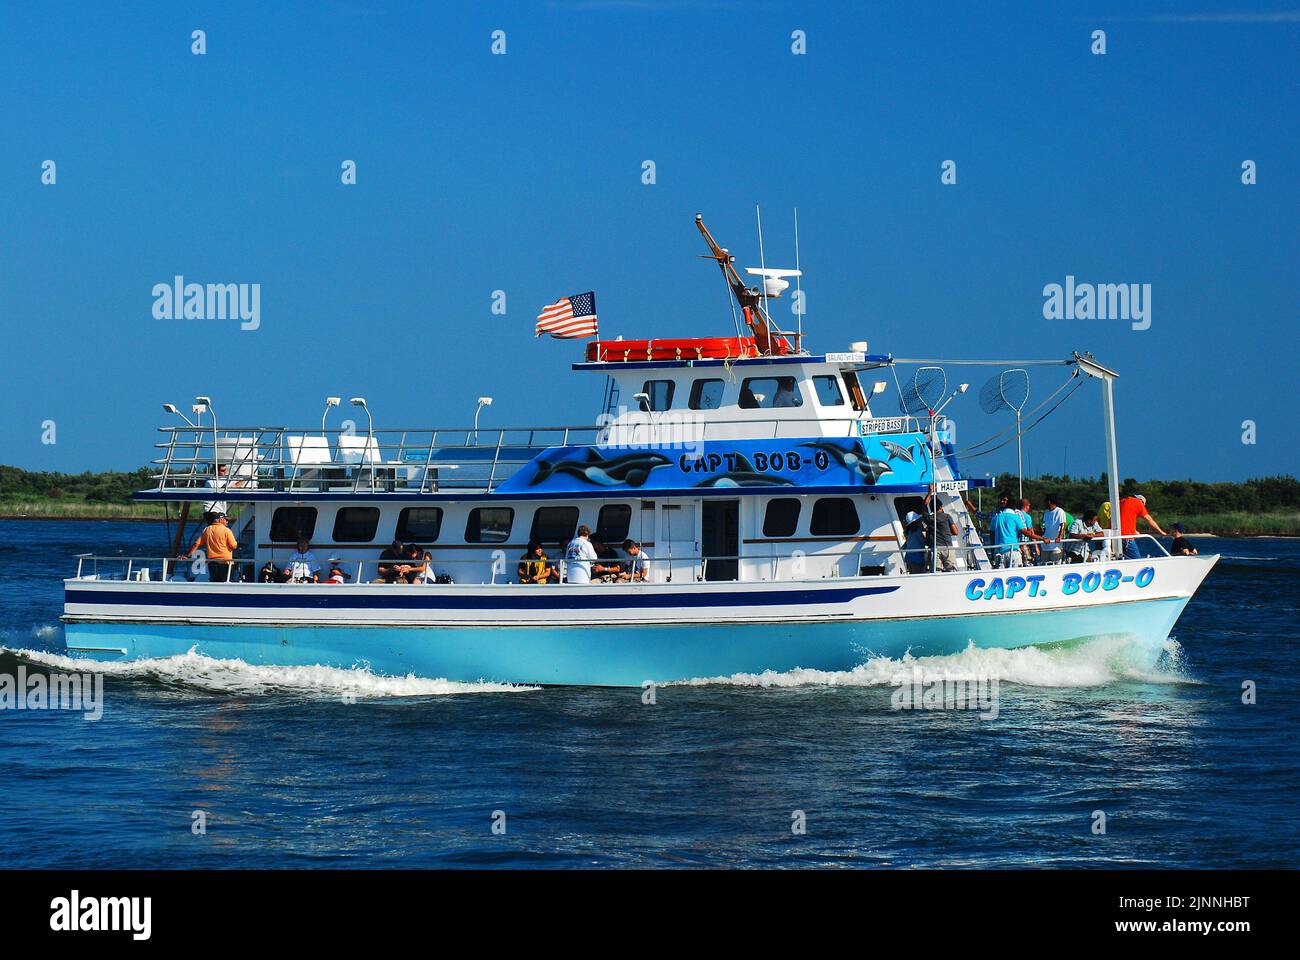 Le bateau de pêche affrété, le capitaine Bob O, quitte le port et se dirige vers les mers ouvertes lors d'une journée ensoleillée de vacances d'été Banque D'Images